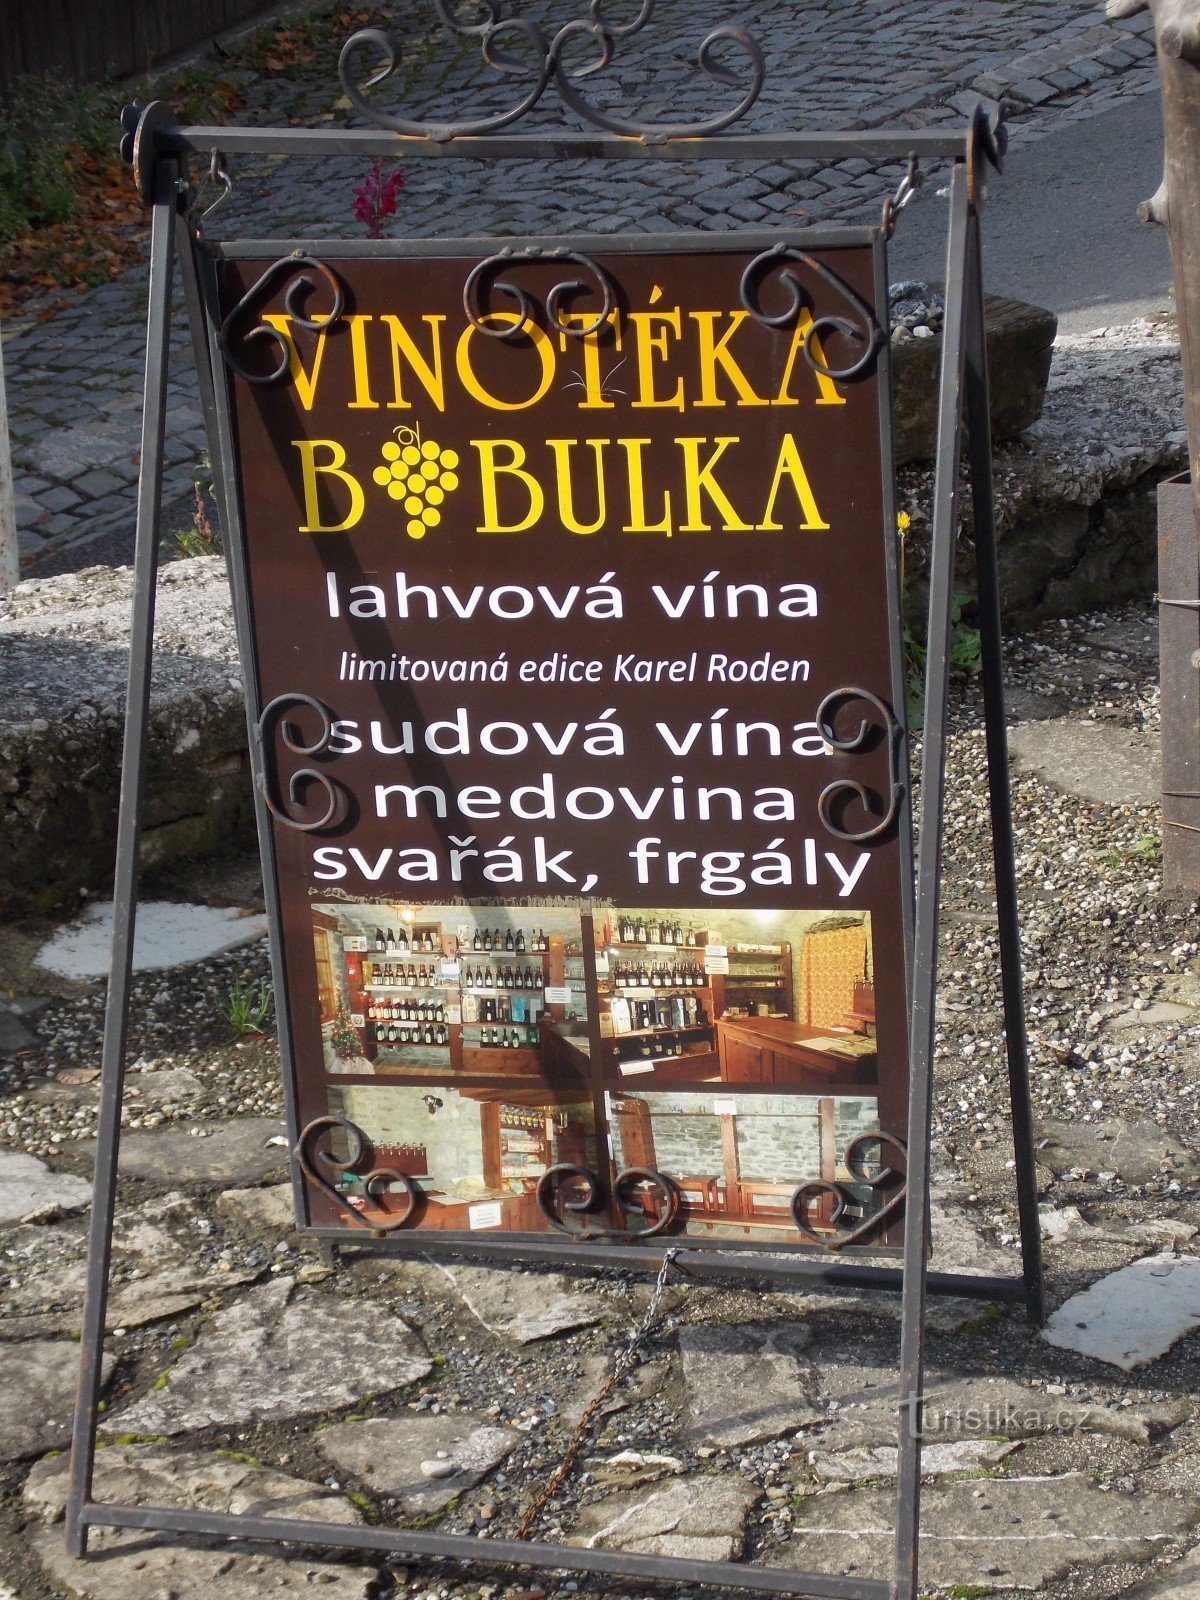 Für guten Wein gehen Sie in die Weinhandlung Bobulka in Štramberk